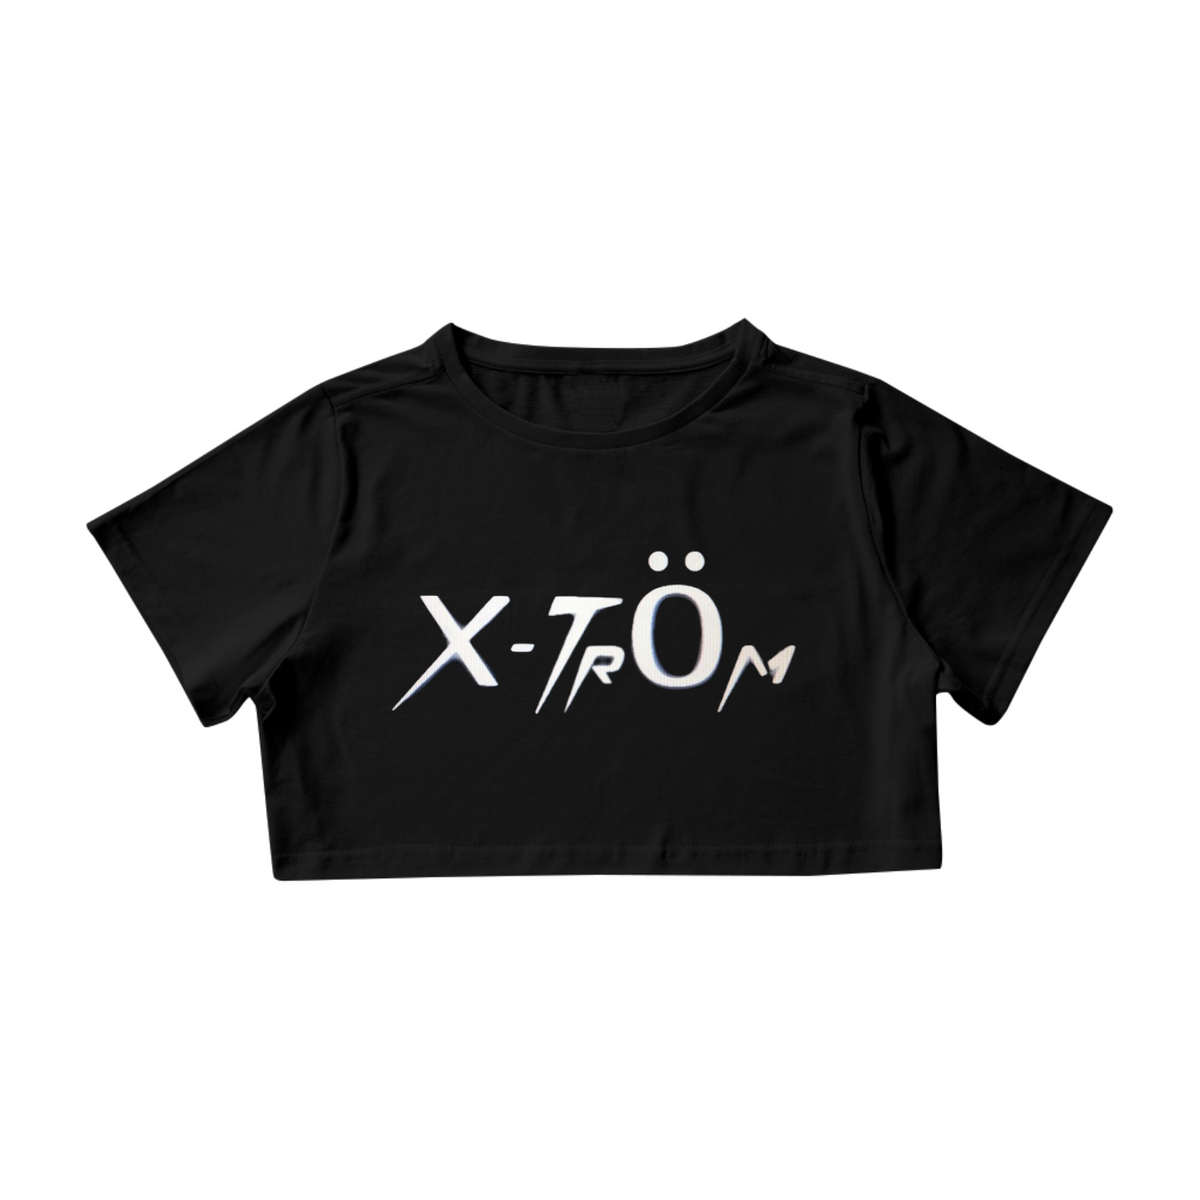 Nome do produto: X-Trom